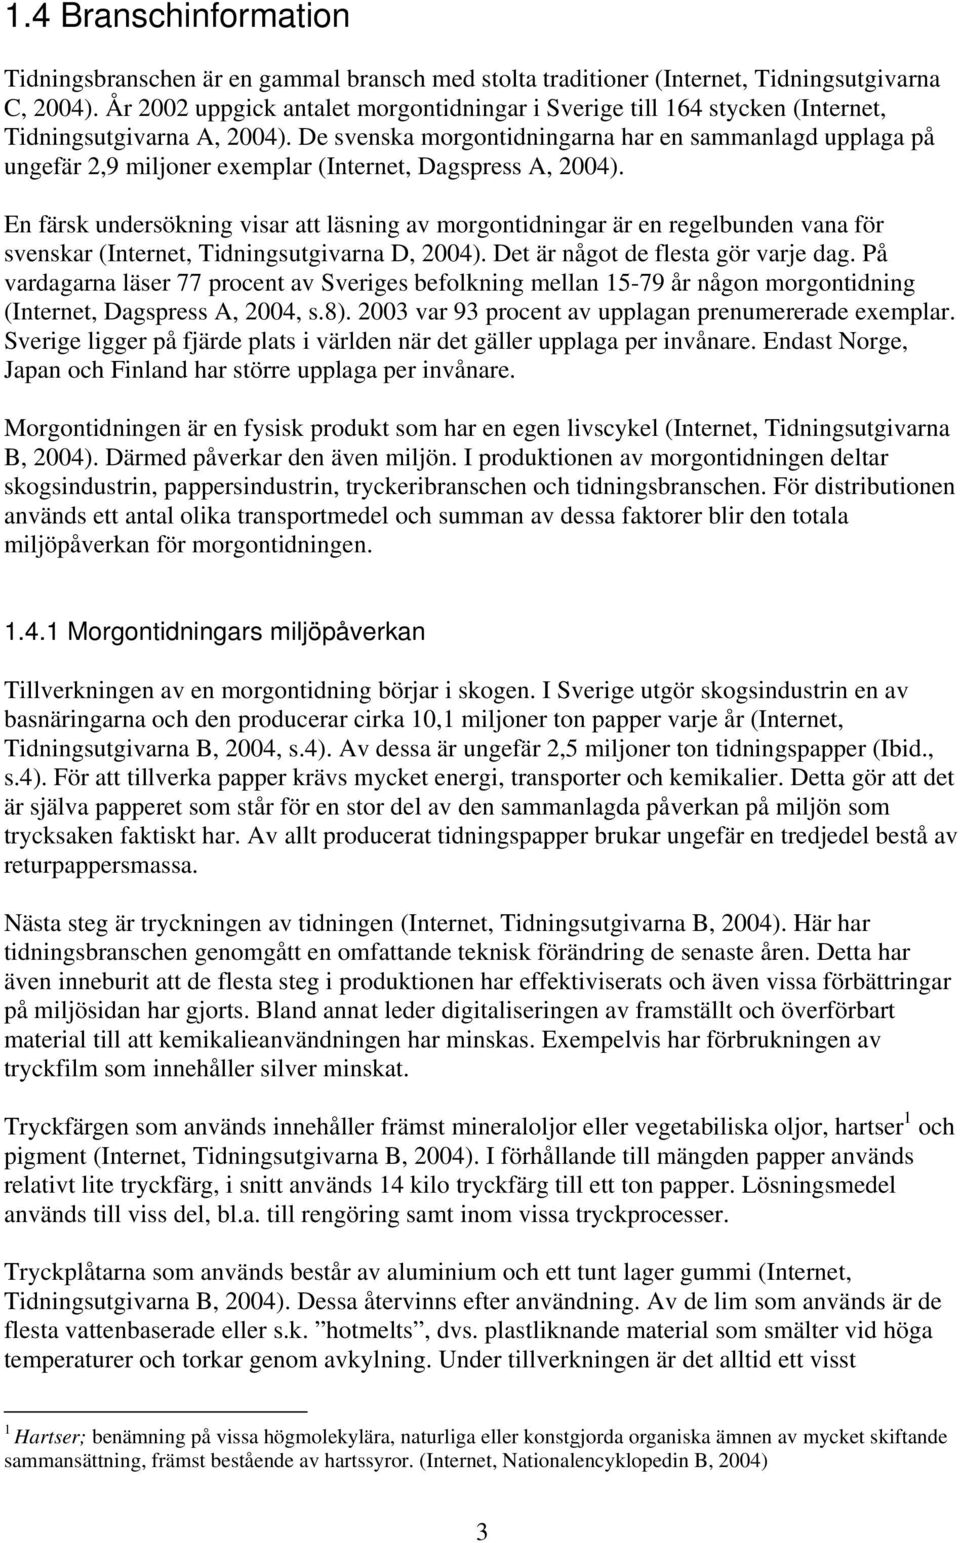 De svenska morgontidningarna har en sammanlagd upplaga på ungefär 2,9 miljoner exemplar (Internet, Dagspress A, 2004).